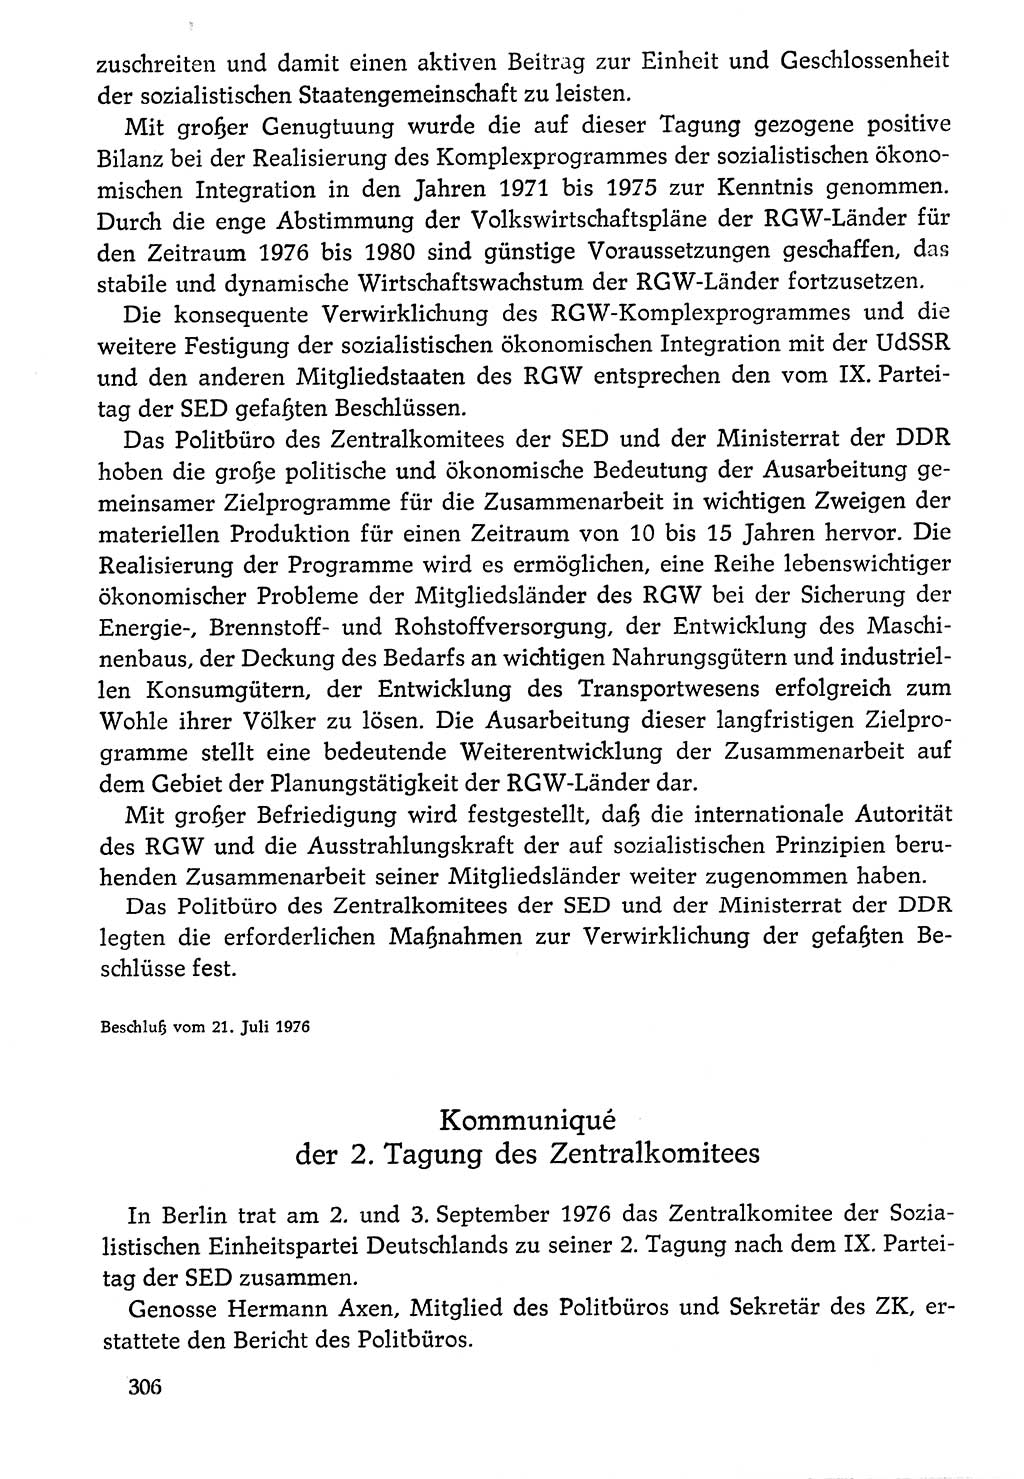 Dokumente der Sozialistischen Einheitspartei Deutschlands (SED) [Deutsche Demokratische Republik (DDR)] 1976-1977, Seite 306 (Dok. SED DDR 1976-1977, S. 306)